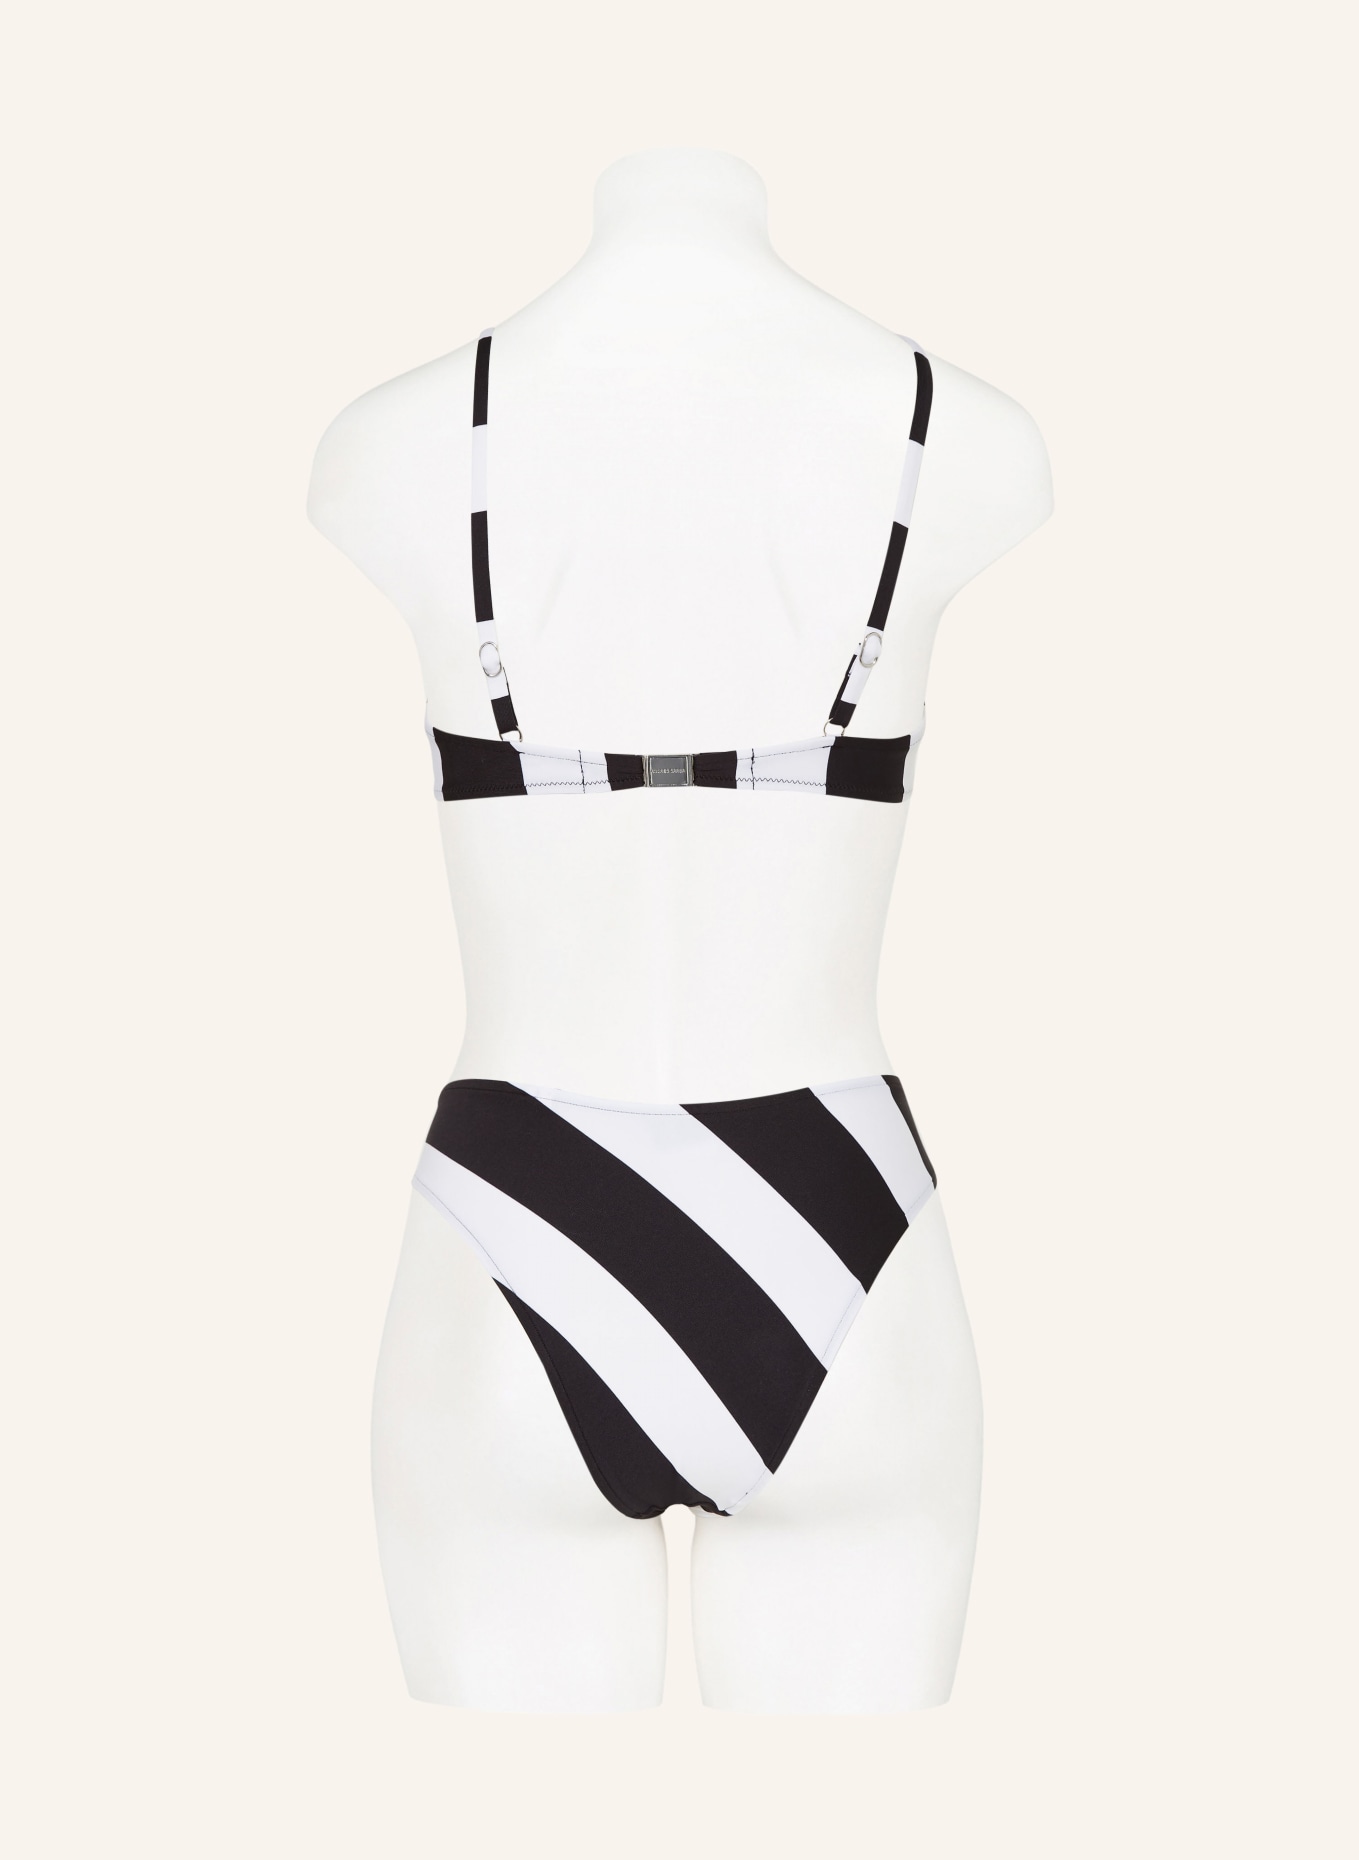 ANDRES SARDA Panty bikini brief MAGGIE, Color: BLACK/ WHITE (Image 3)